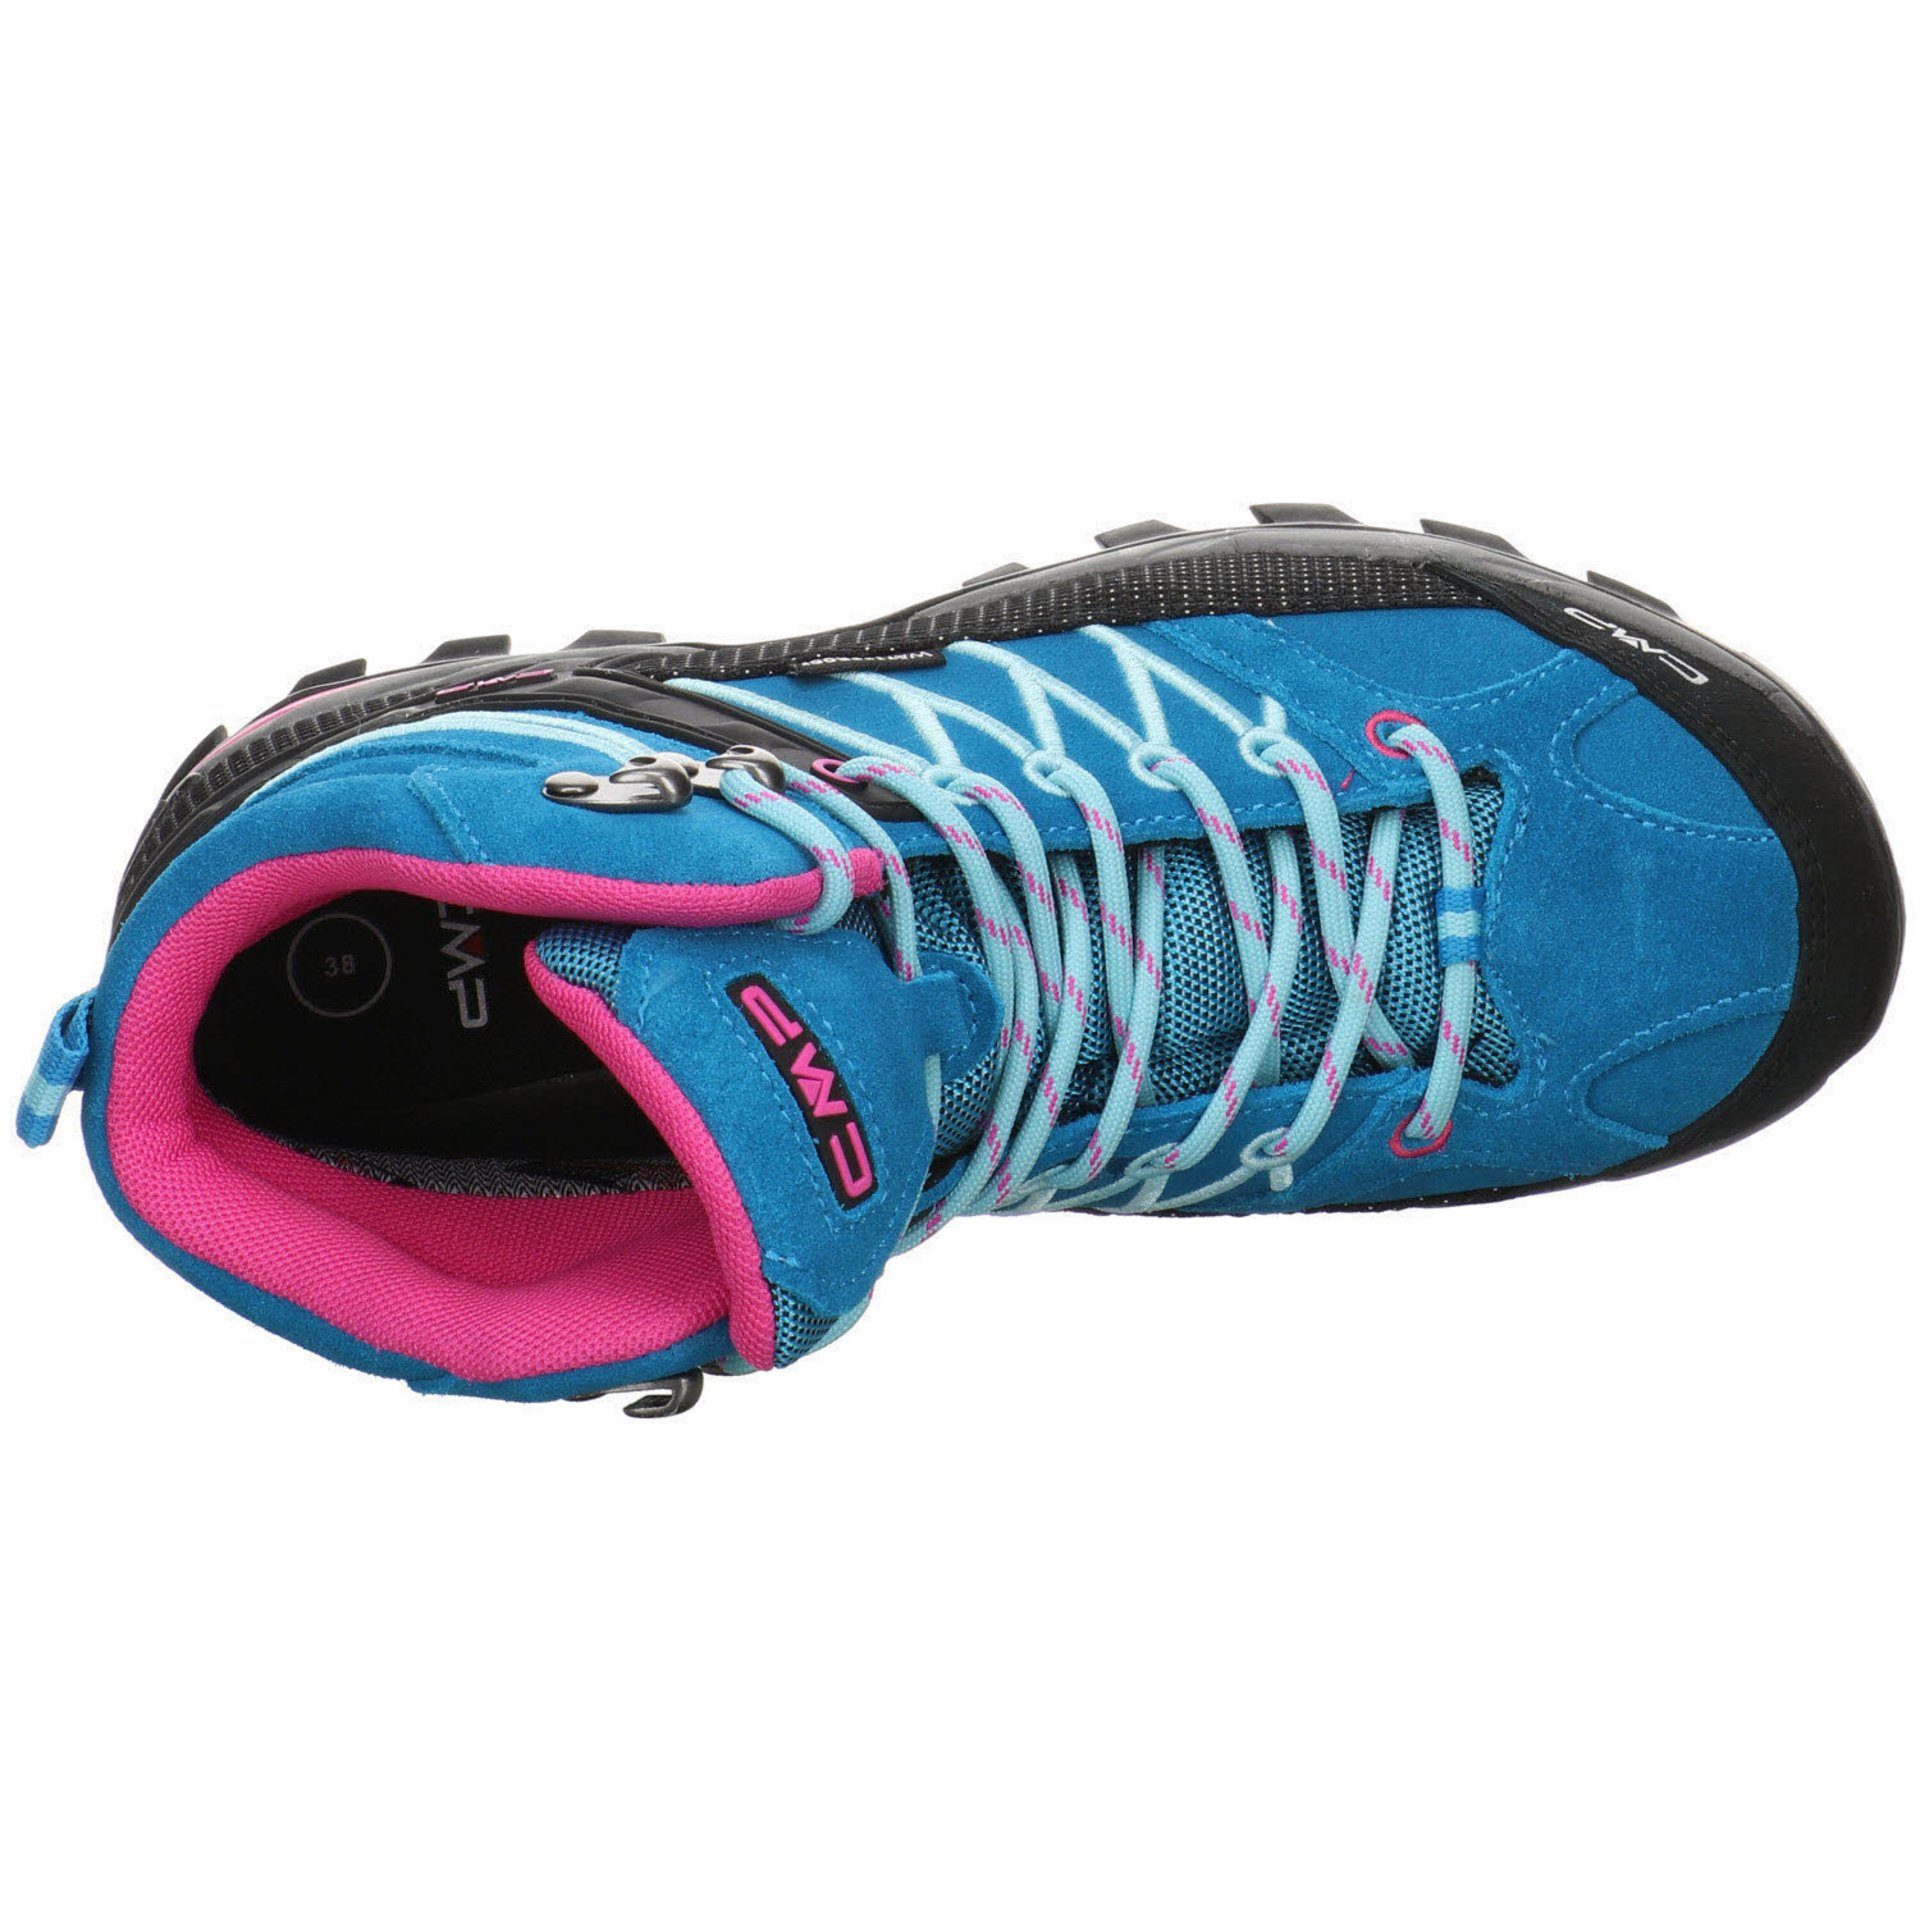 Outdoorschuh Rigel Damen Leder-/Textilkombination CMP türkis-pink Schuhe Mid Outdoorschuh Outdoor